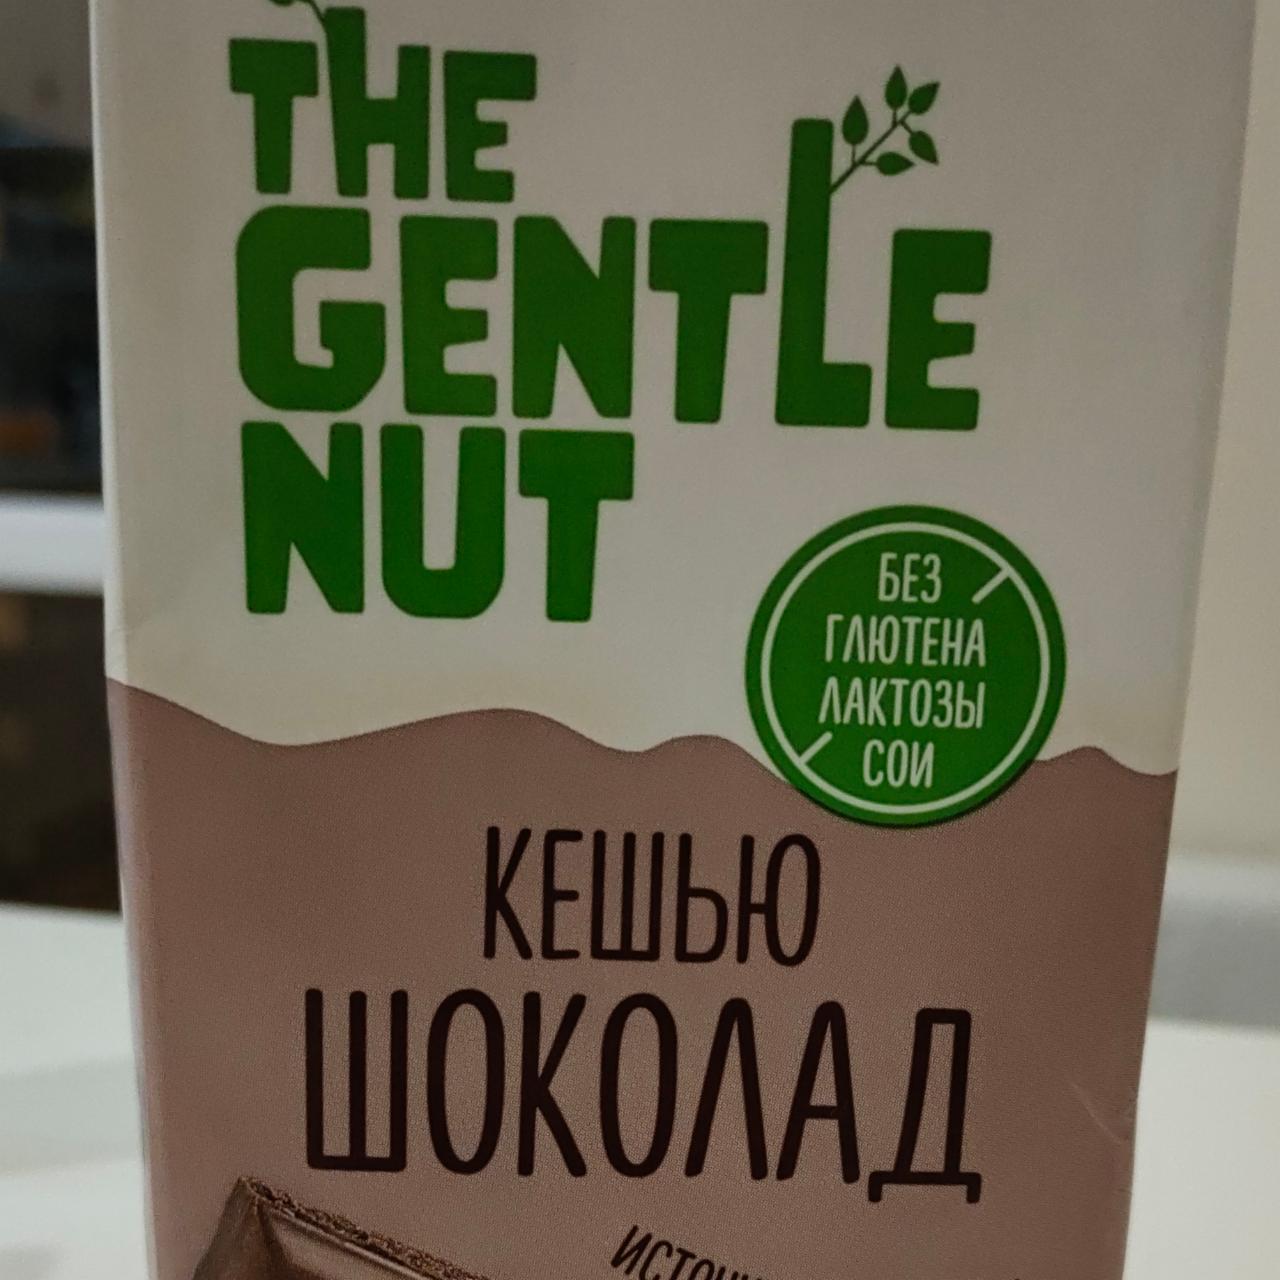 Фото - Напиток ореховый Кешью и шоколад The Gentle Nut